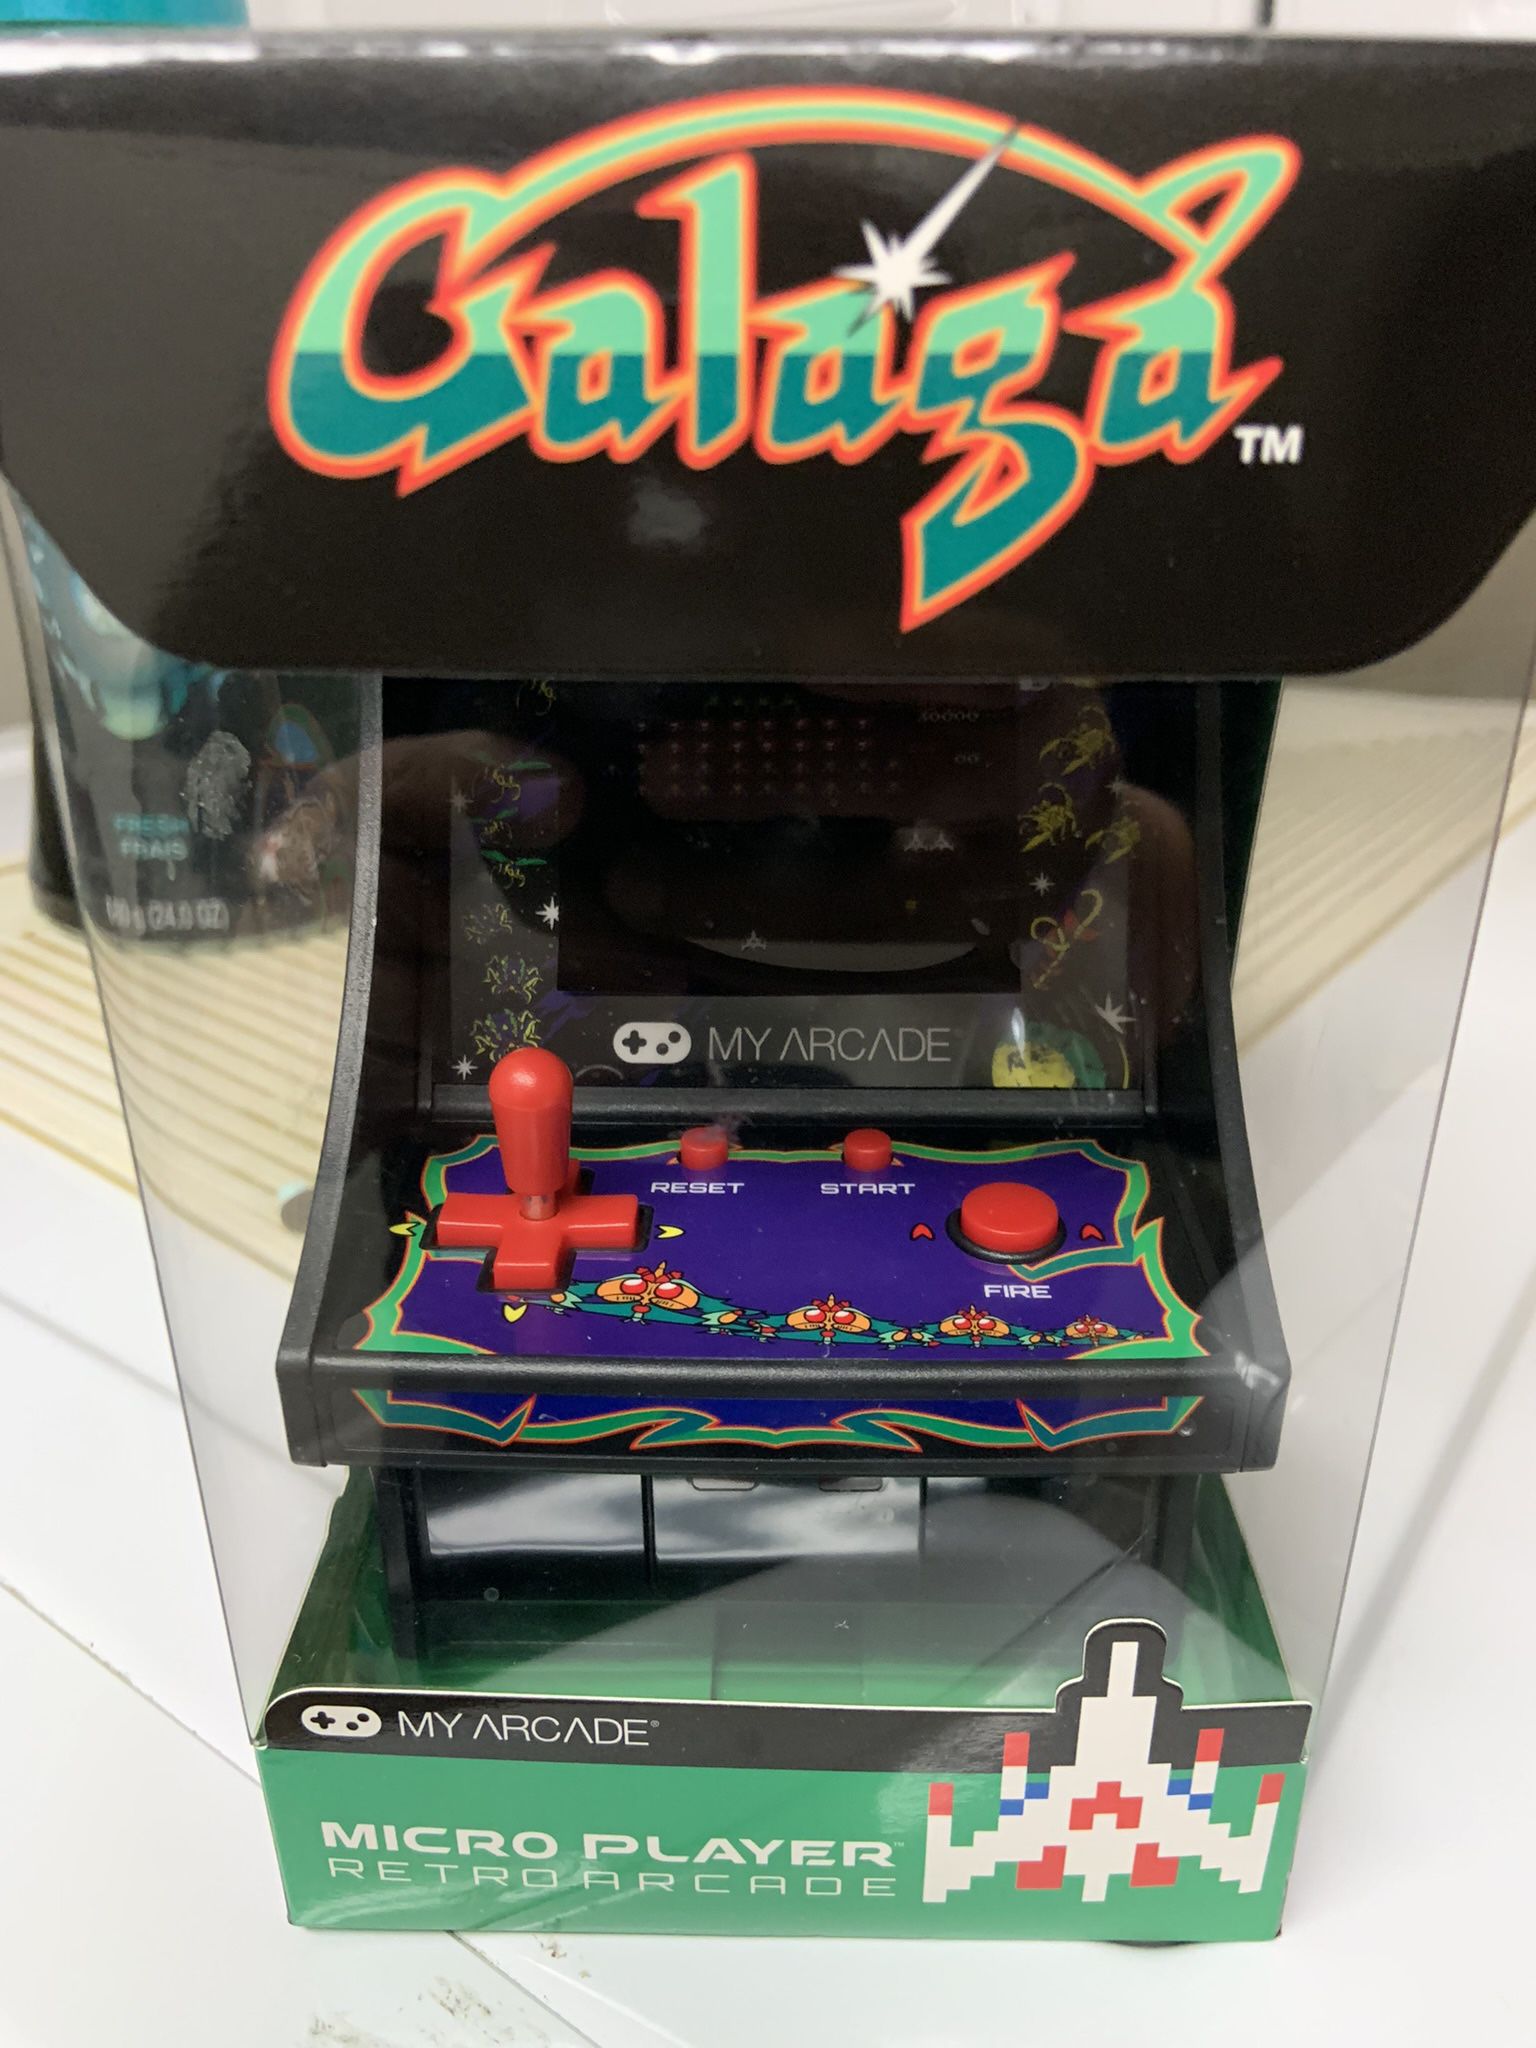 Mini Galaga Video Game